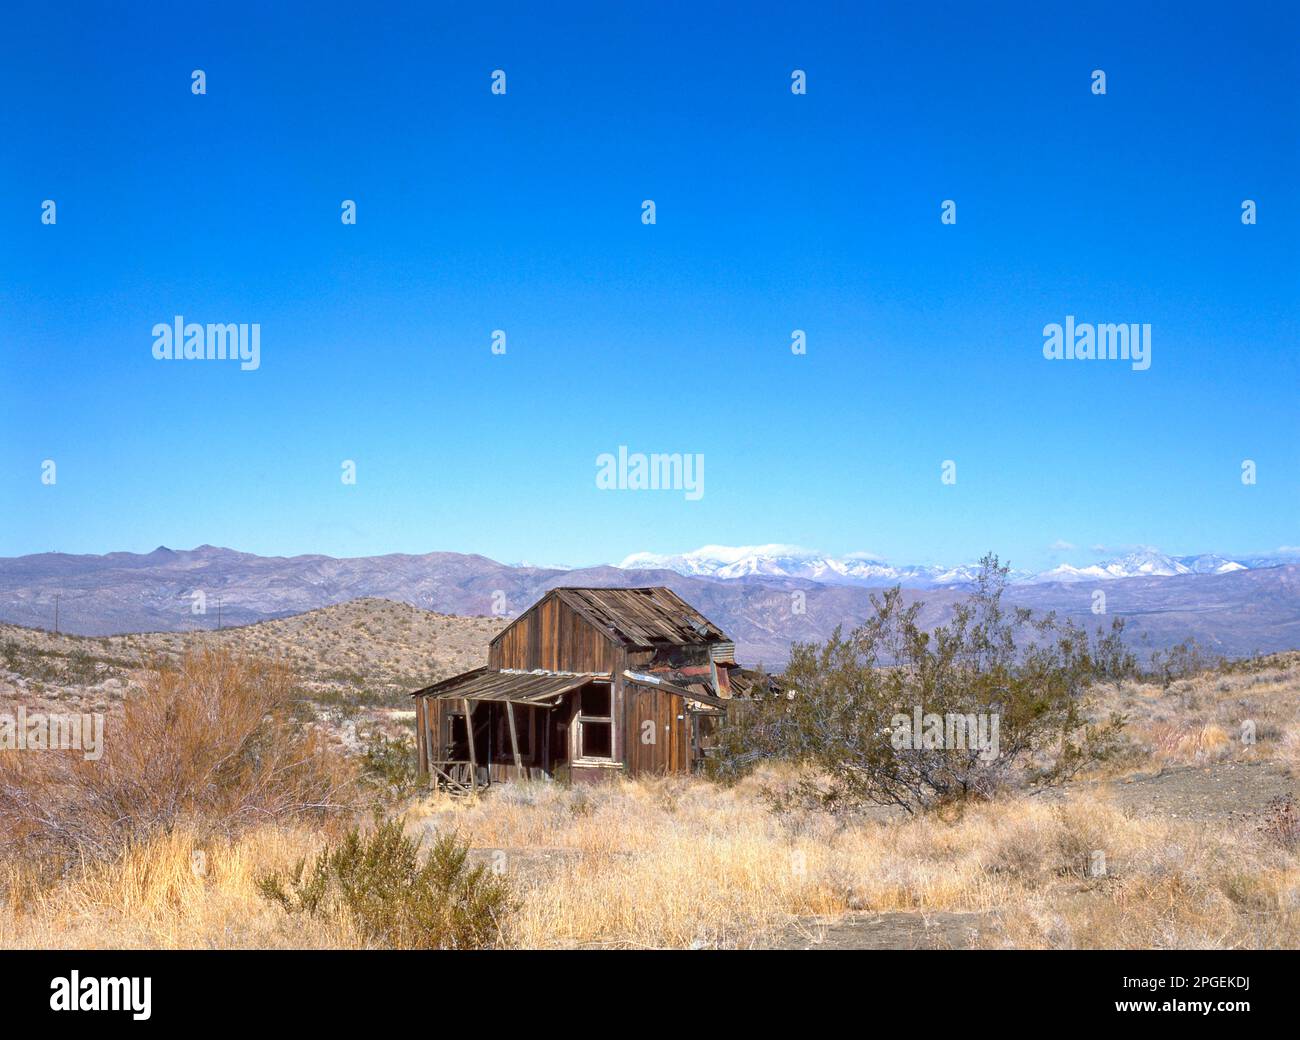 Abbandonata casa di città fantasma di legno nel deserto californiano con montagne sullo sfondo Foto Stock